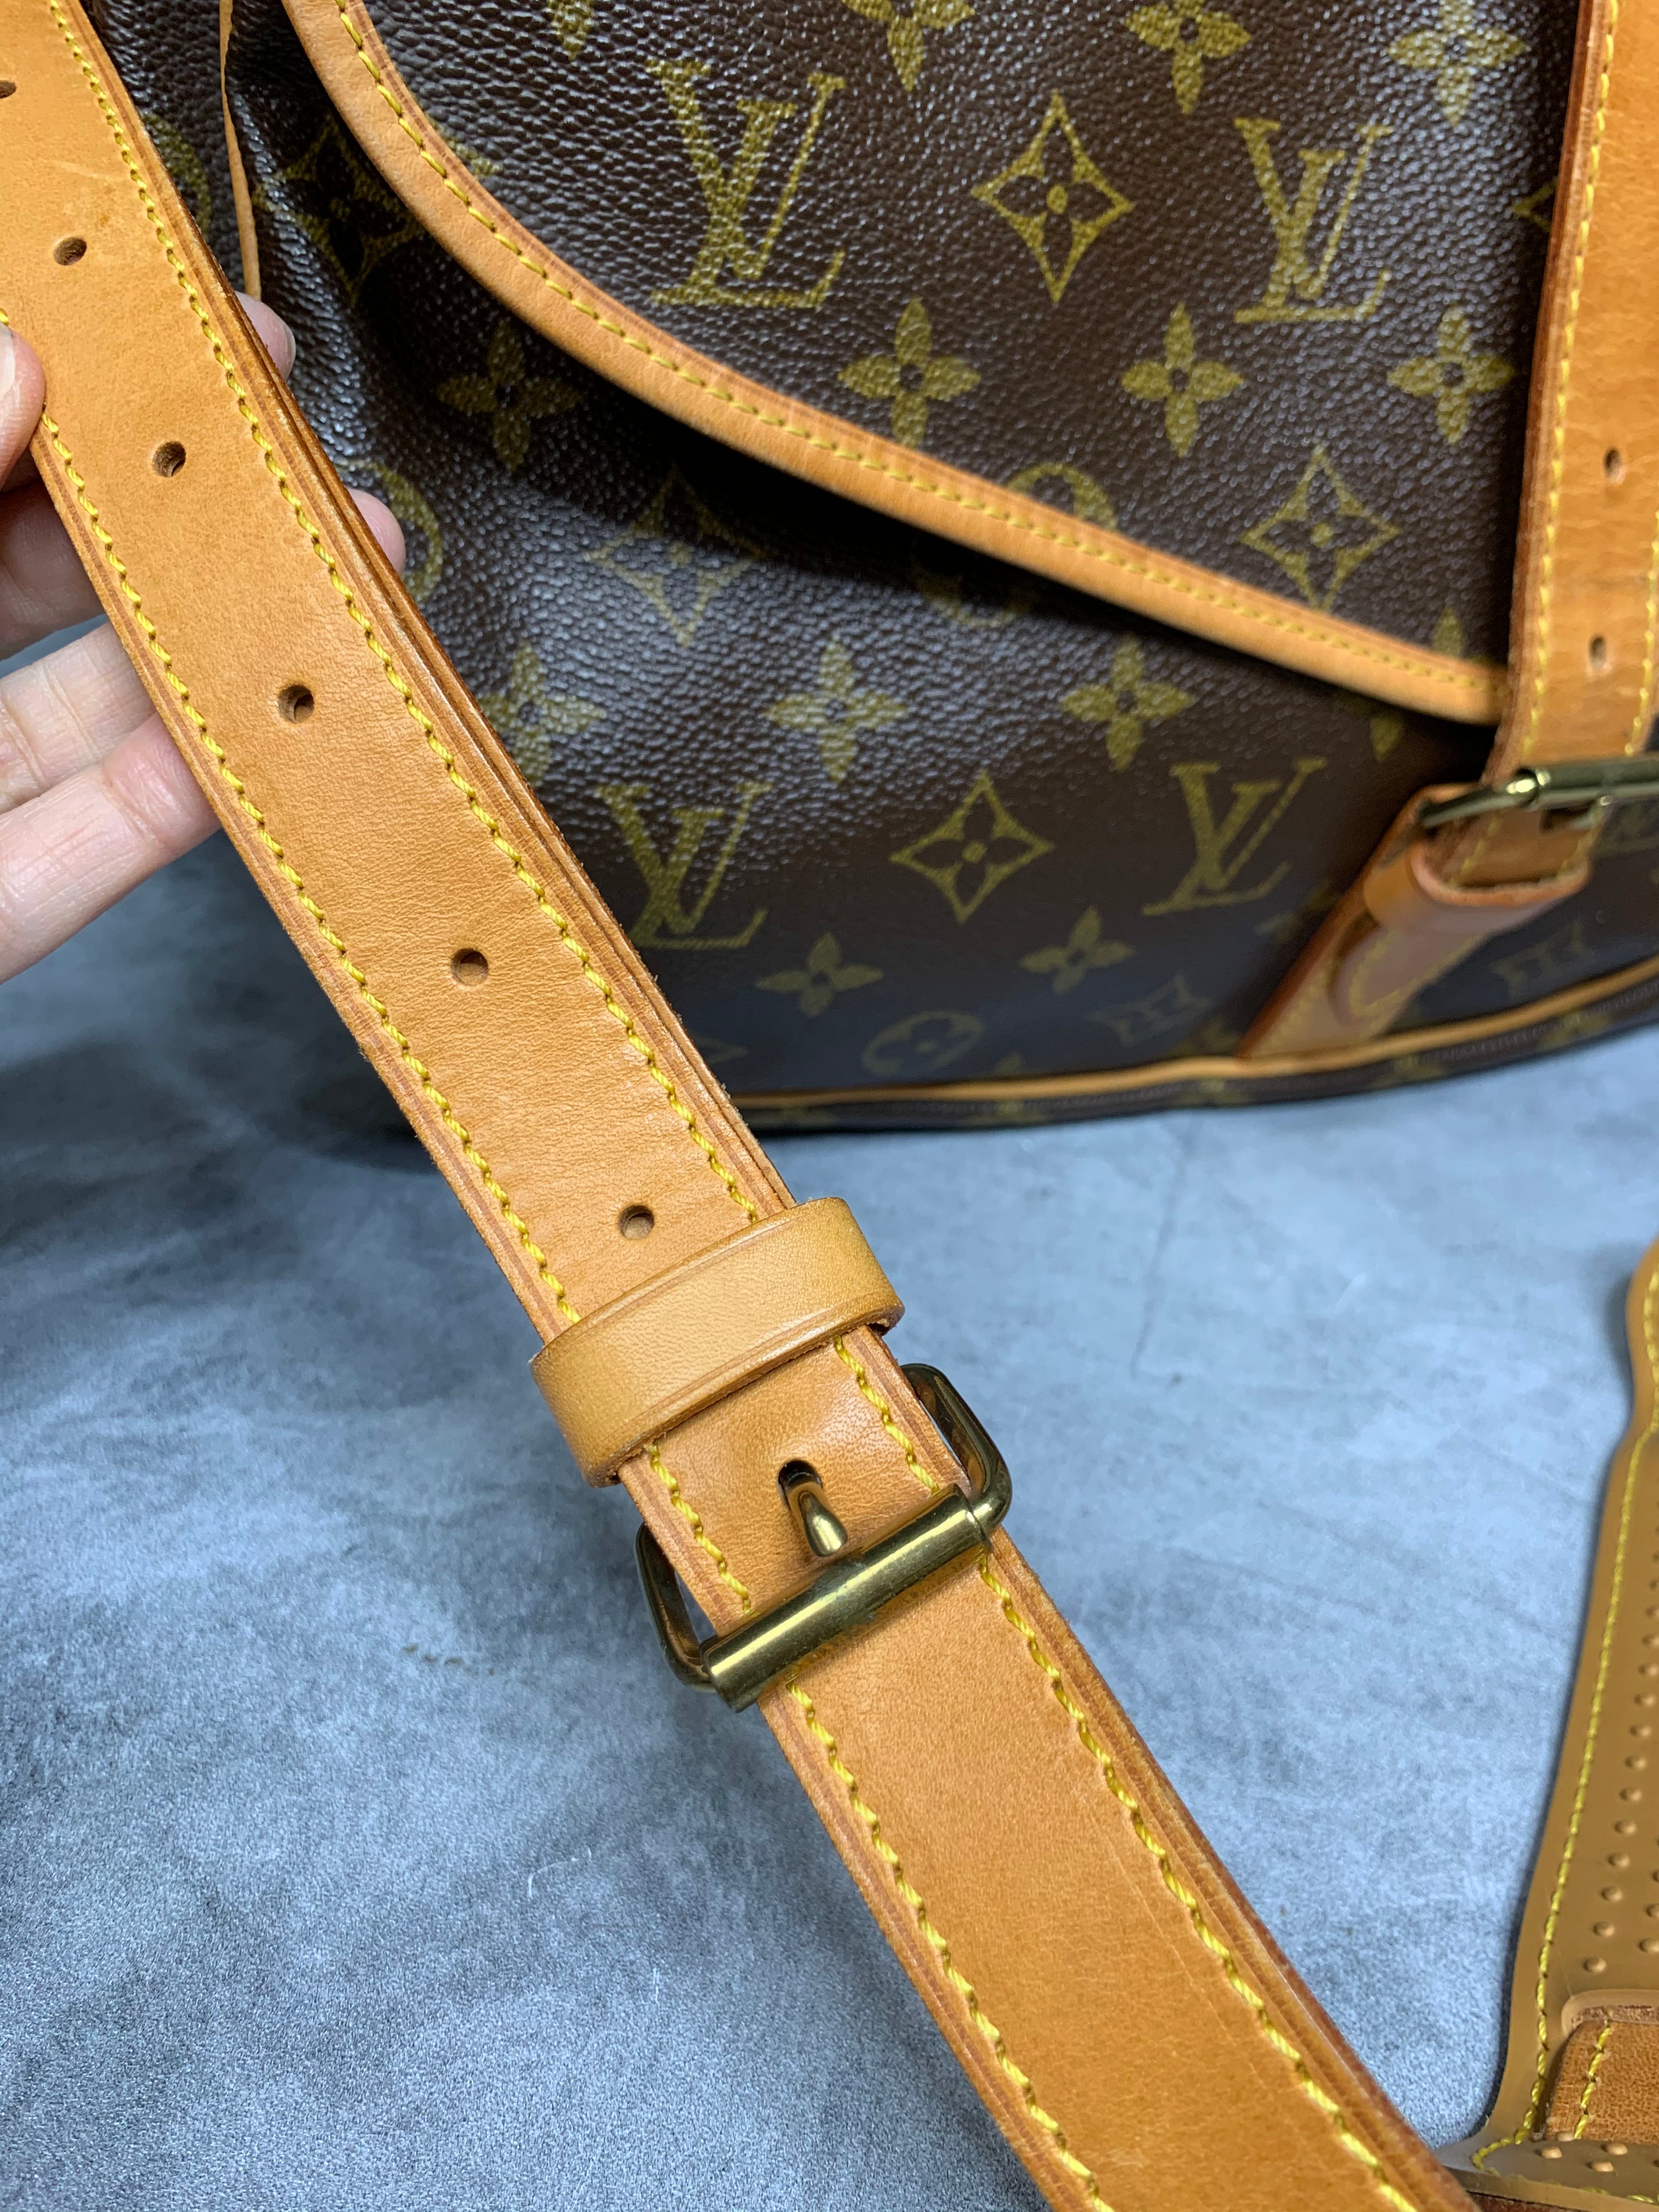 The Louis Vuitton Saumur bag - Handbag Clinic & Boutique